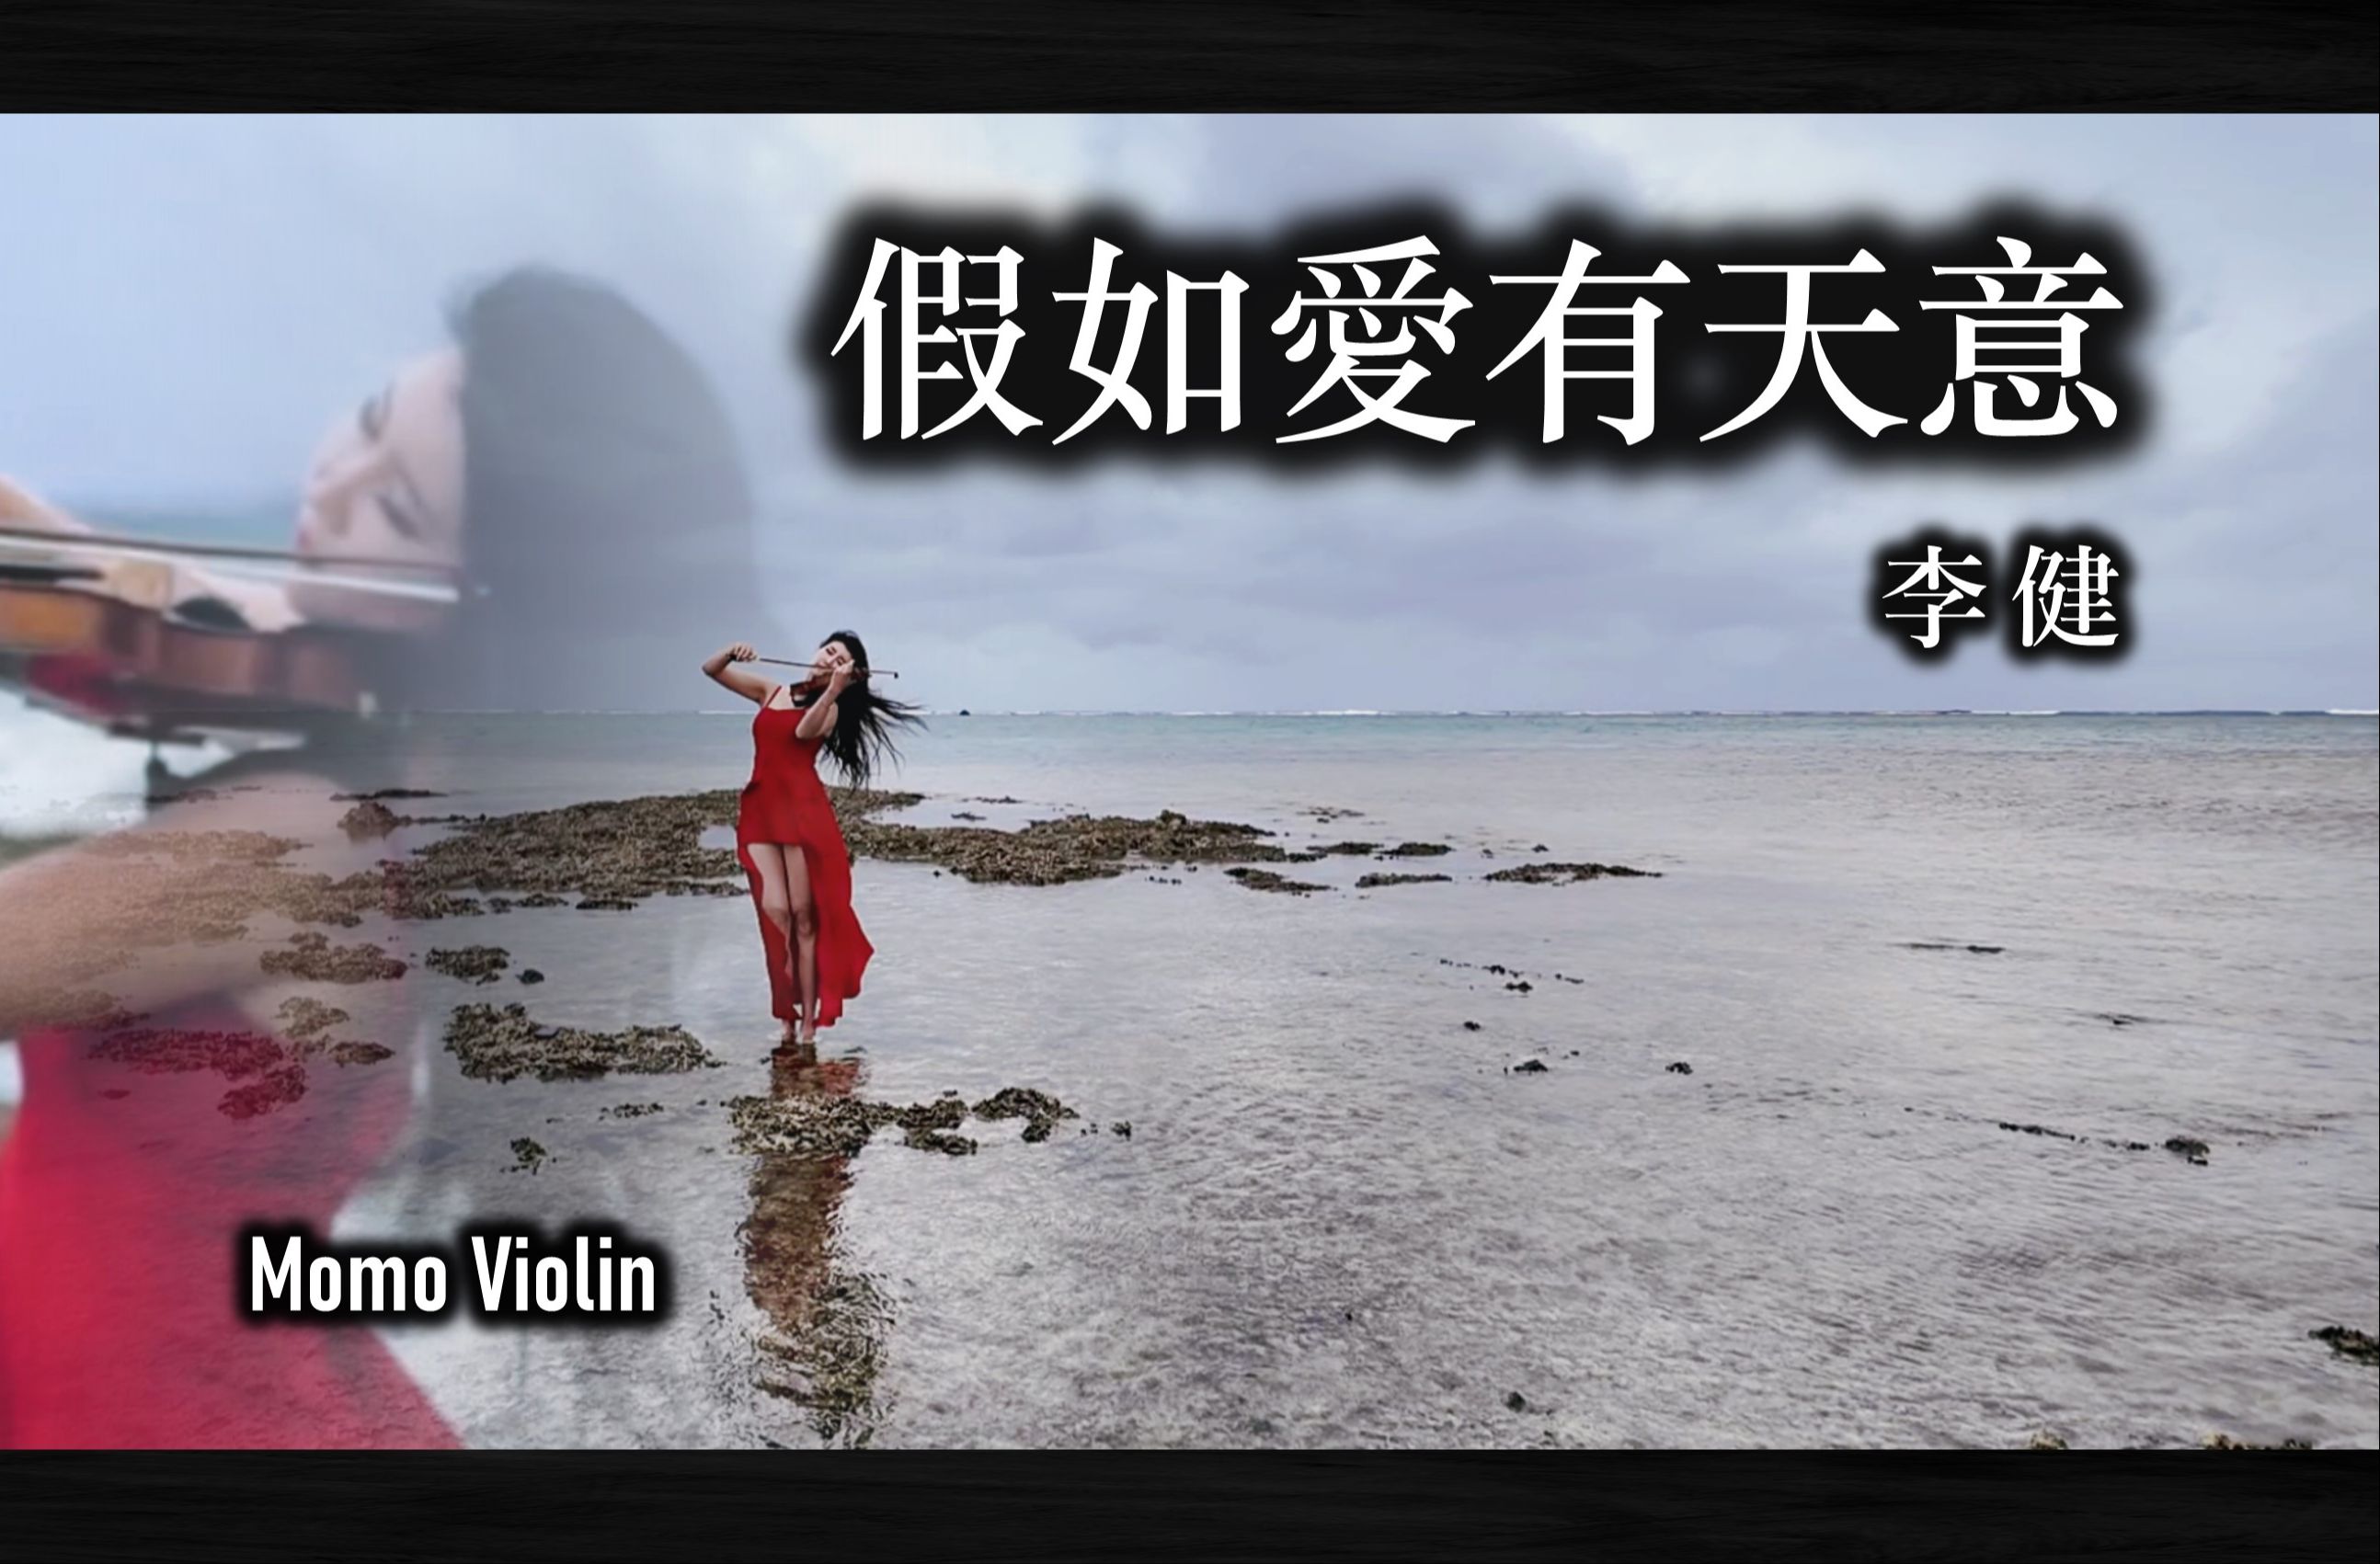 【小提琴】假如爱有天意 violin cover by momo